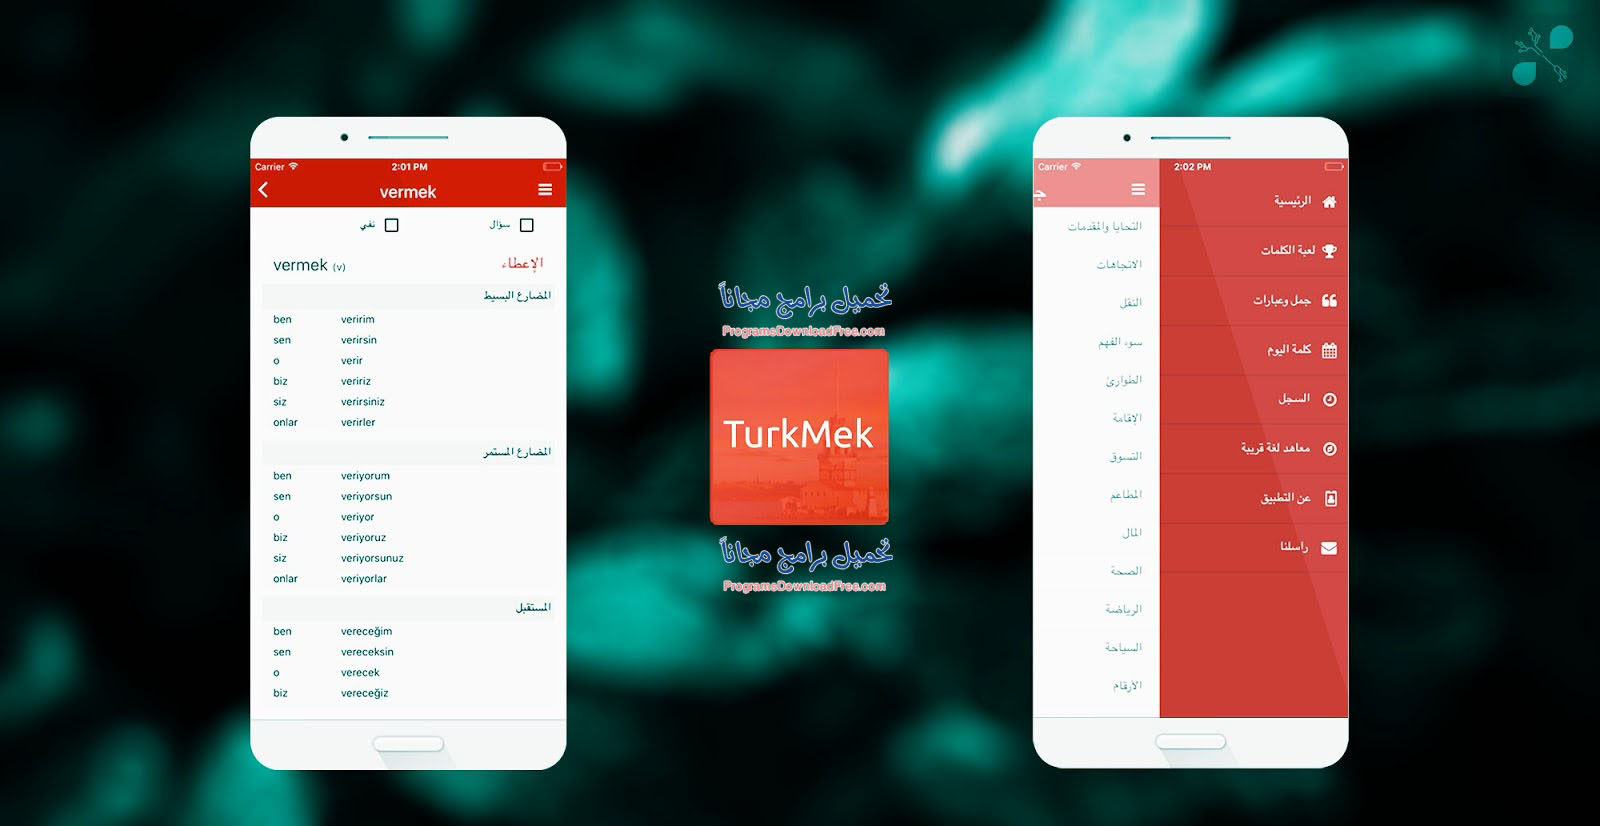 تحميل برنامج تعلم اللغة التركية Learn Turkish للمبتدئين بالصوت والصورة بدون انترنت 1